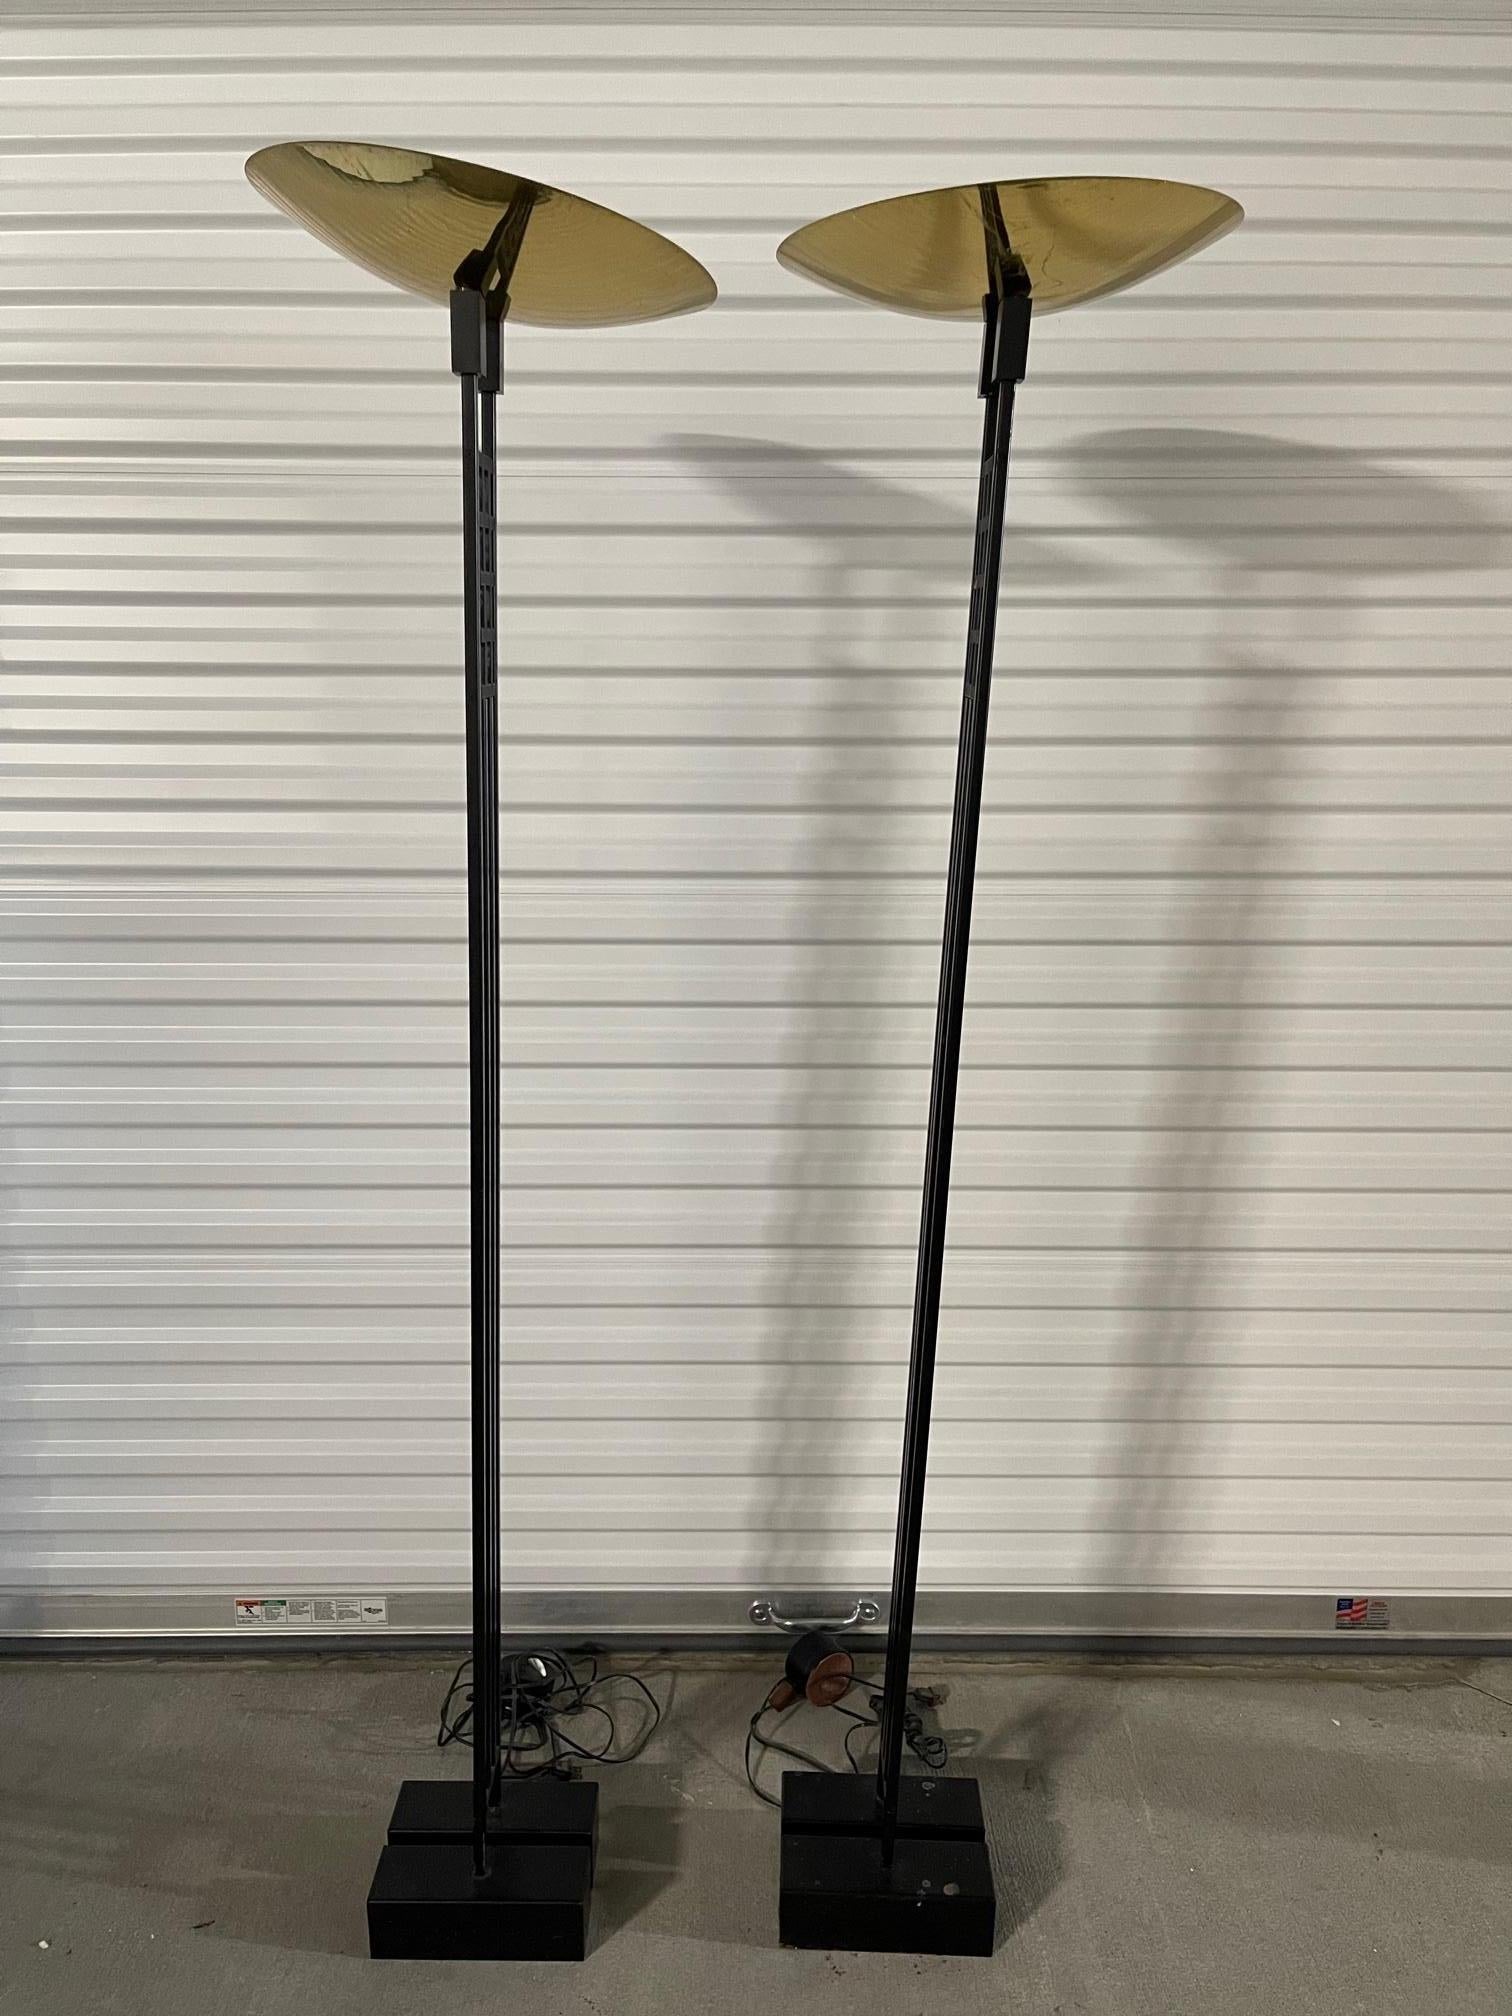 Paire de lampadaires halogènes Roche Bobois, 20e siècle. La base mesure 9,5